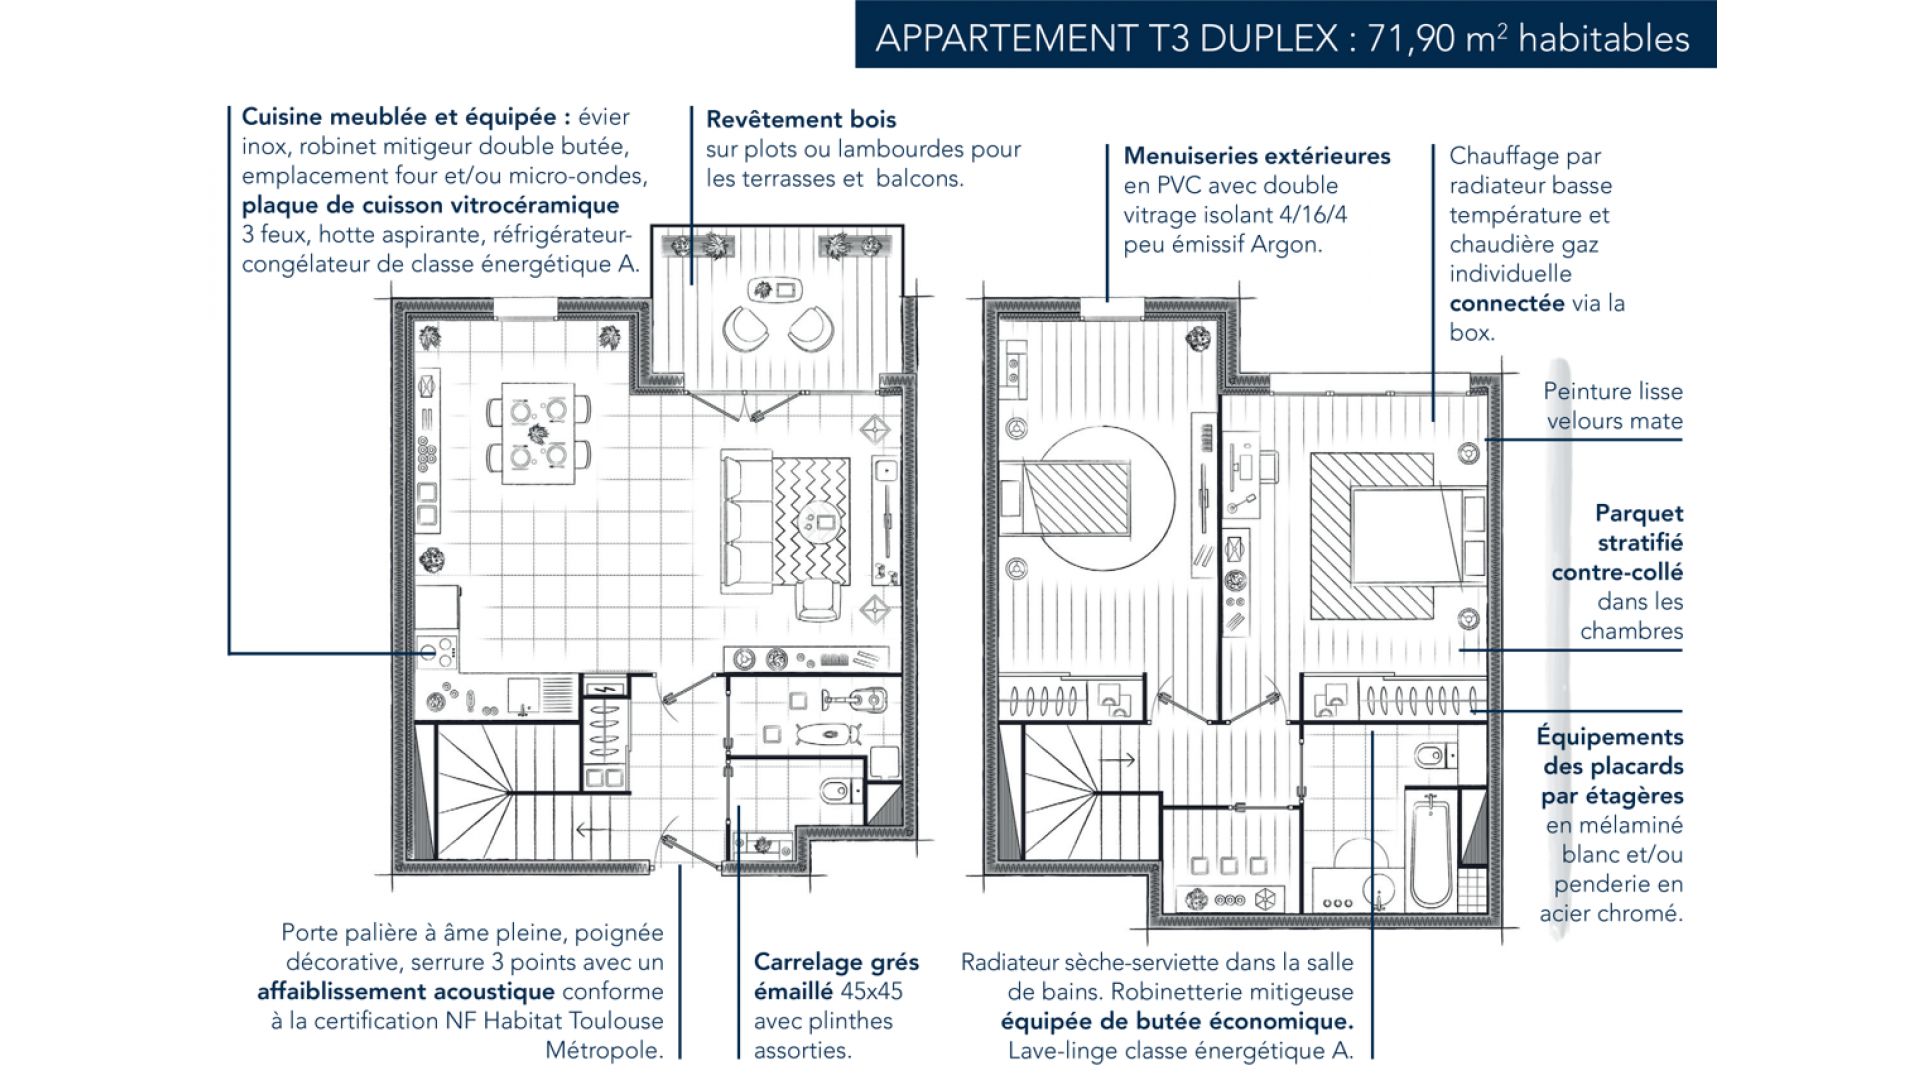 Greencity Immobilier -  Pavillon Luchet -31200 Toulouse quartier croix daurade - achat appartements du T2 au T5Duplex - plan appartement T3 duplex